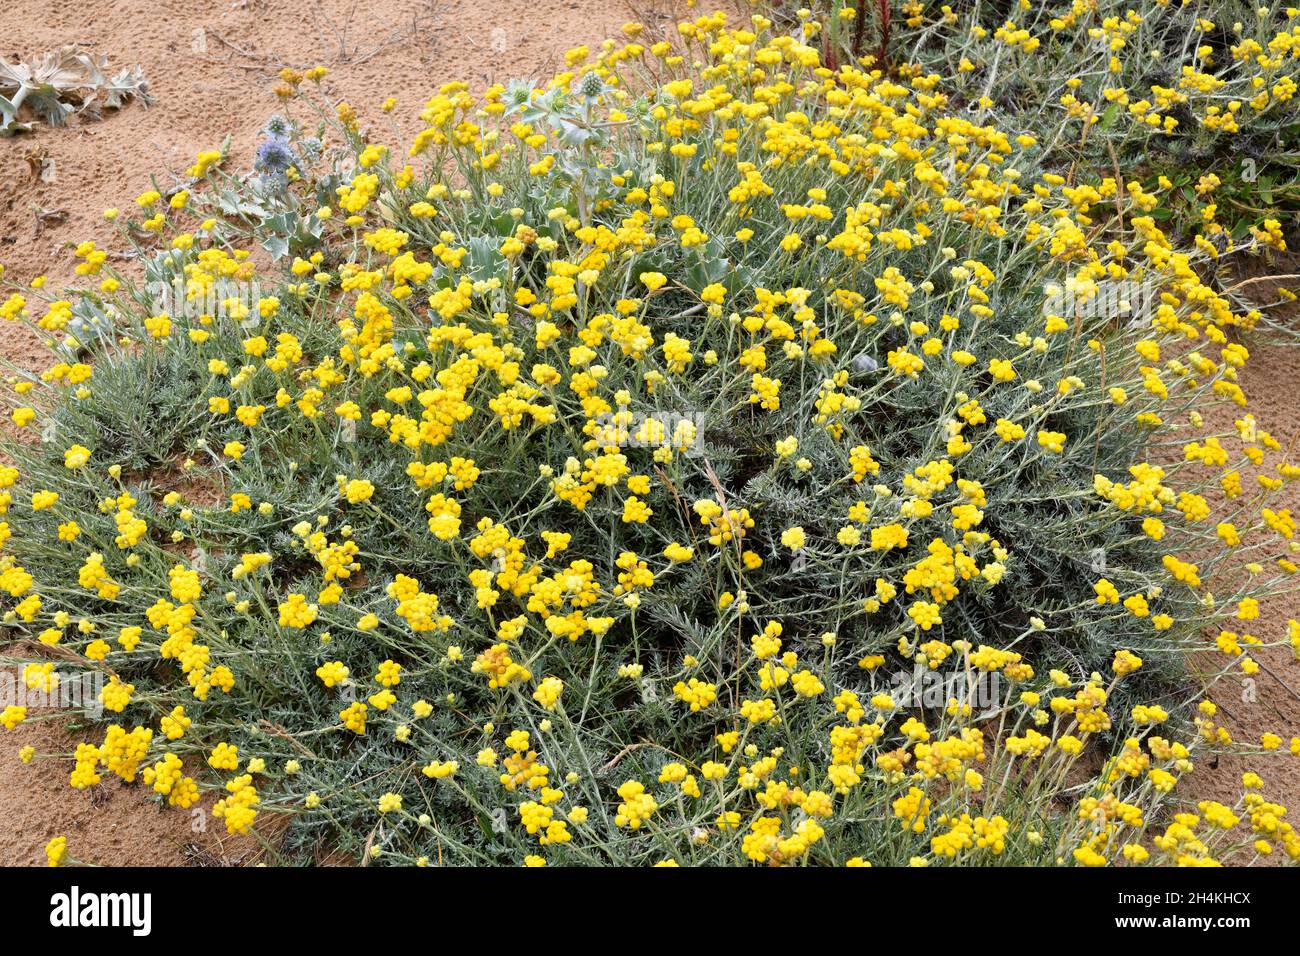 Die mediterrane Strohblume (Helichrysum stoechas) ist eine einjährige oder mehrjährige Pflanze, die an den sandigen Küsten des Mittelmeerbeckens beheimatet ist. Dieses Foto wurde aufgenommen Stockfoto